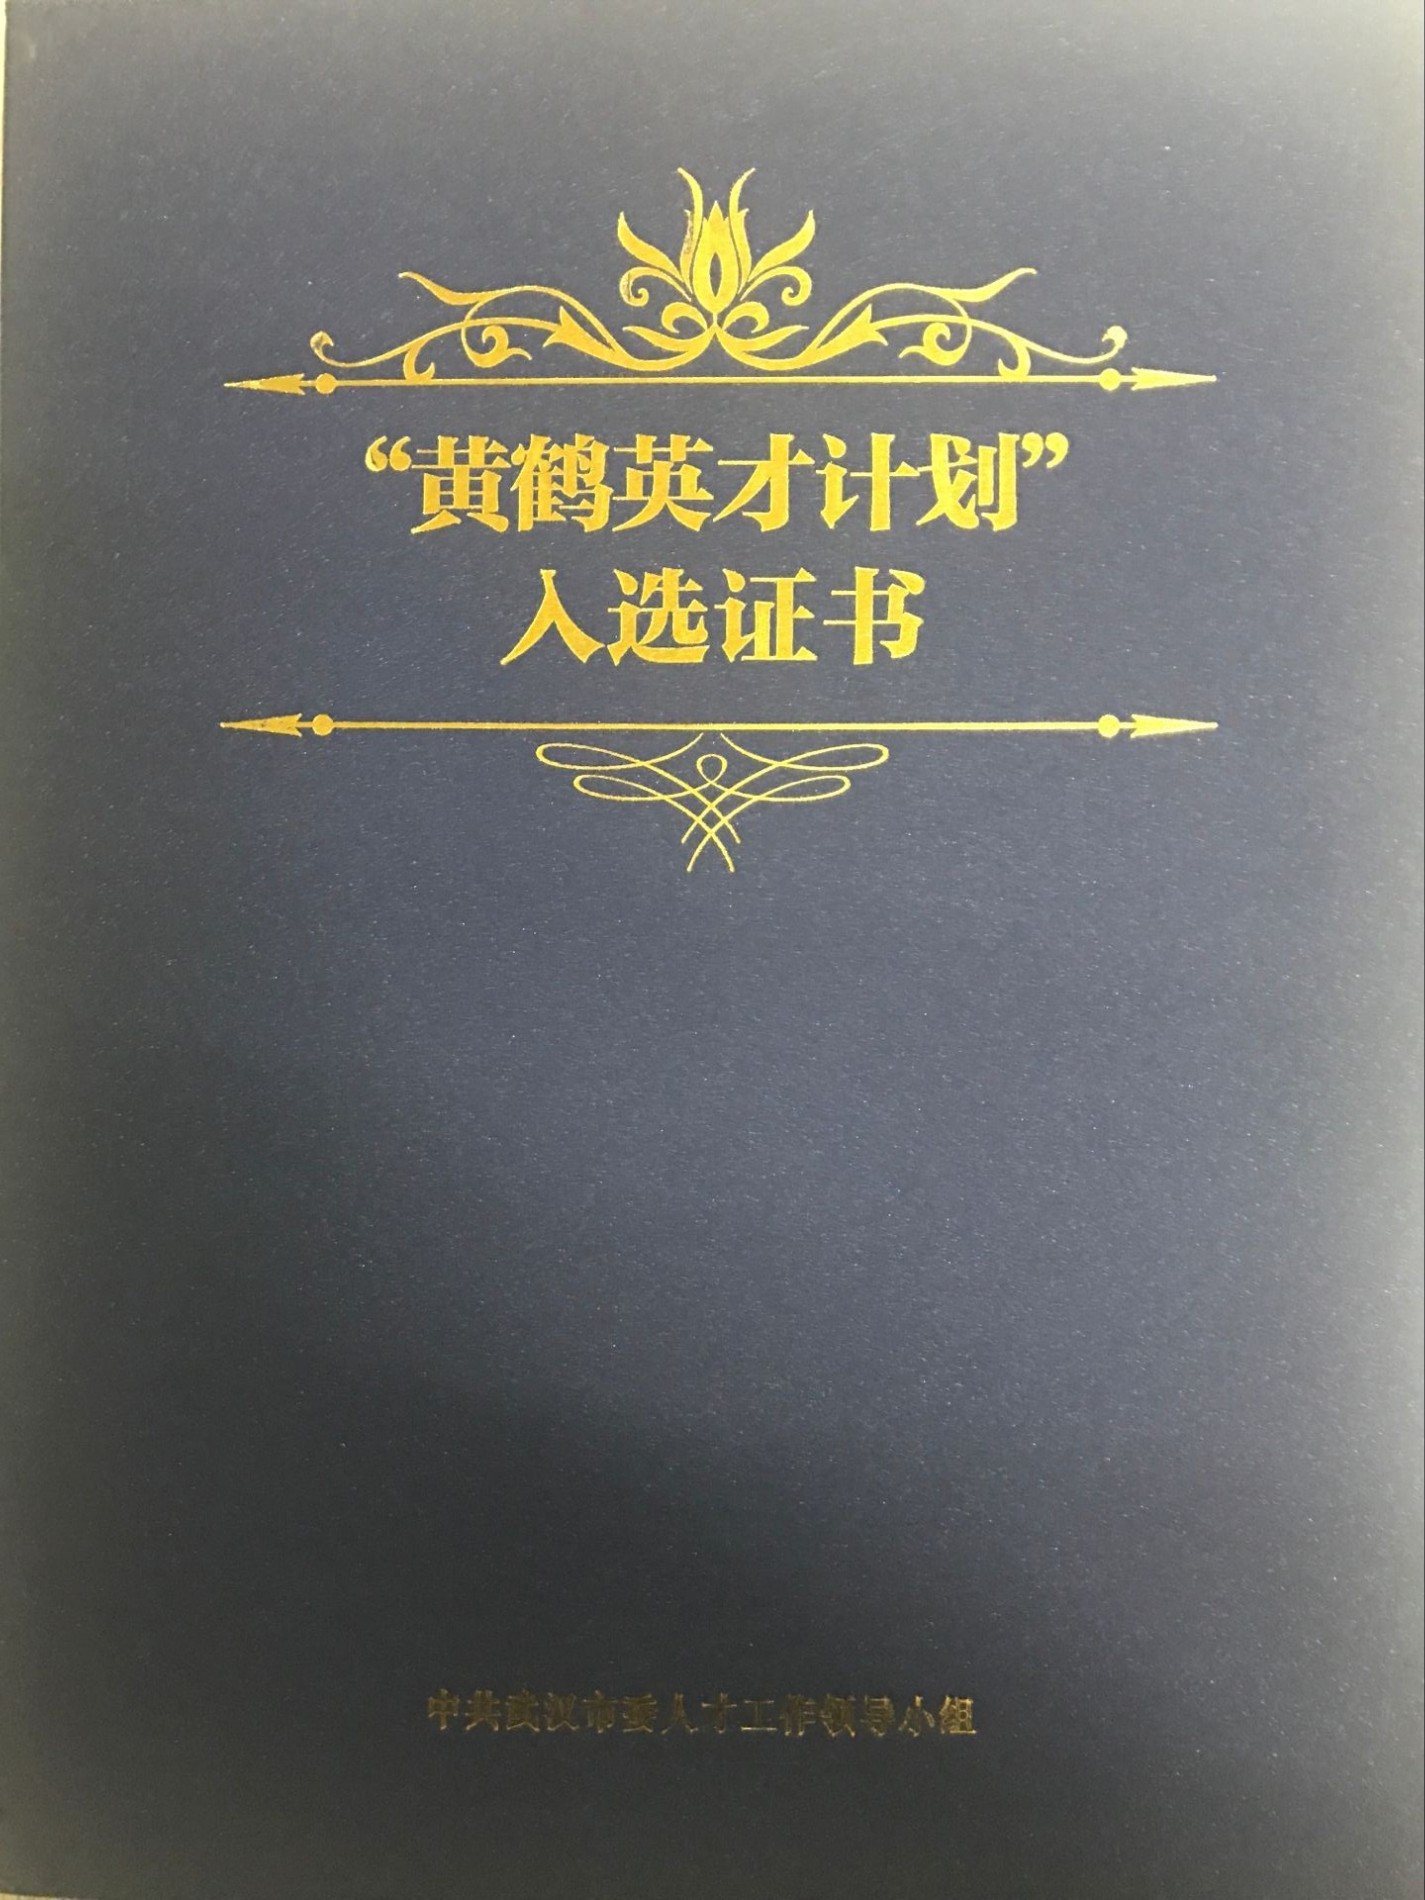 HuangHe Yingcai Certificate Scheme